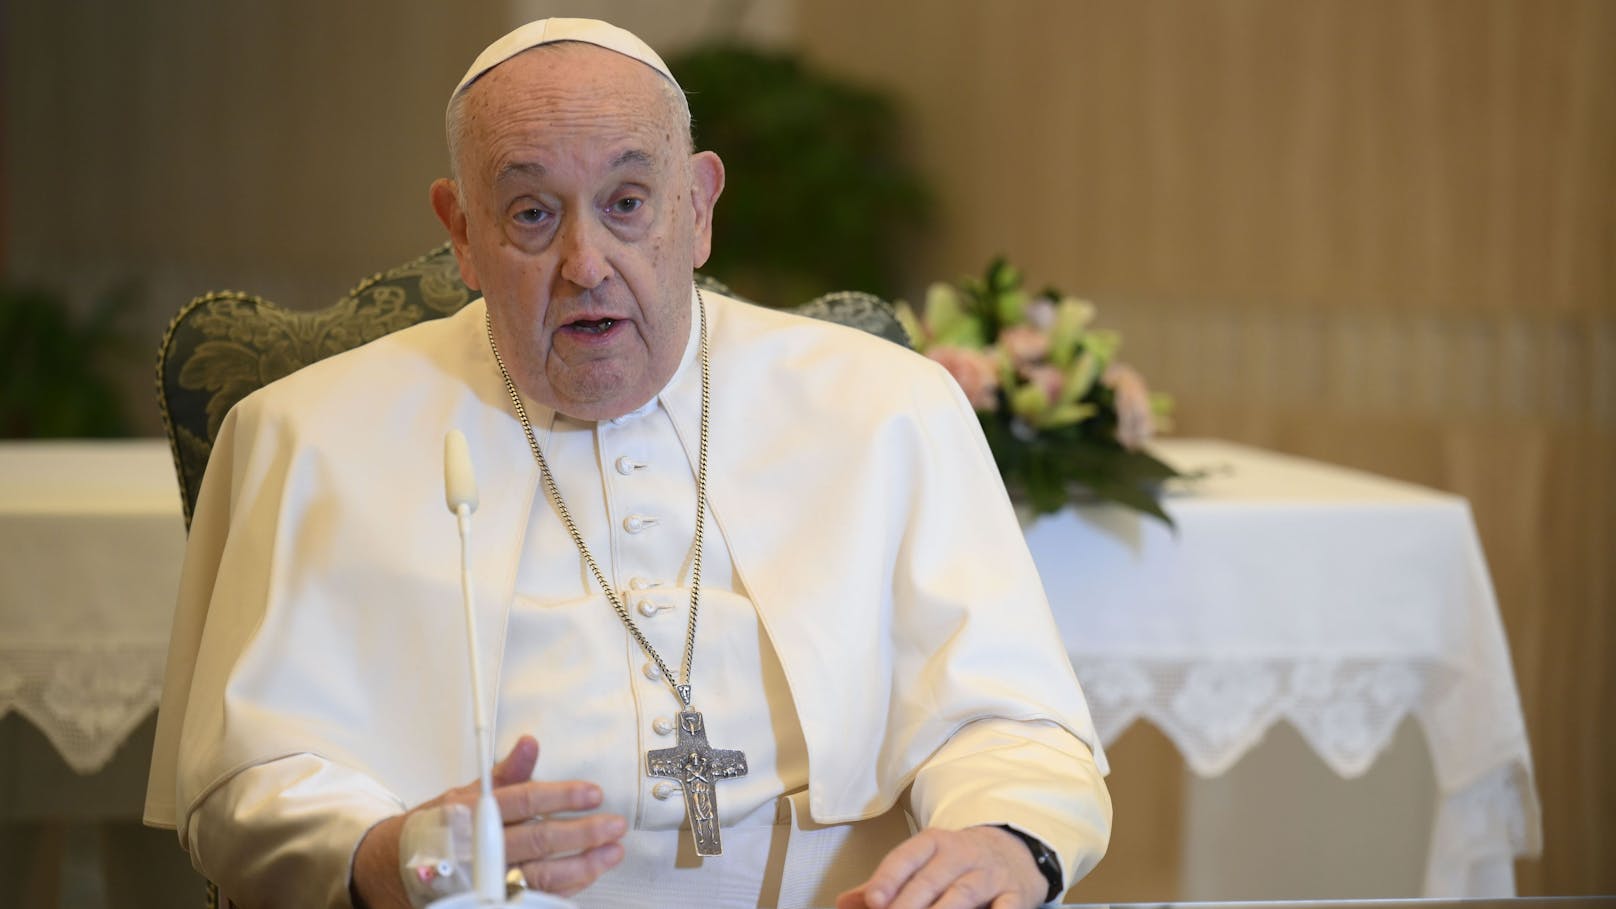 Verwirrung um Krankheit von Papst – Vatikan gibt Update